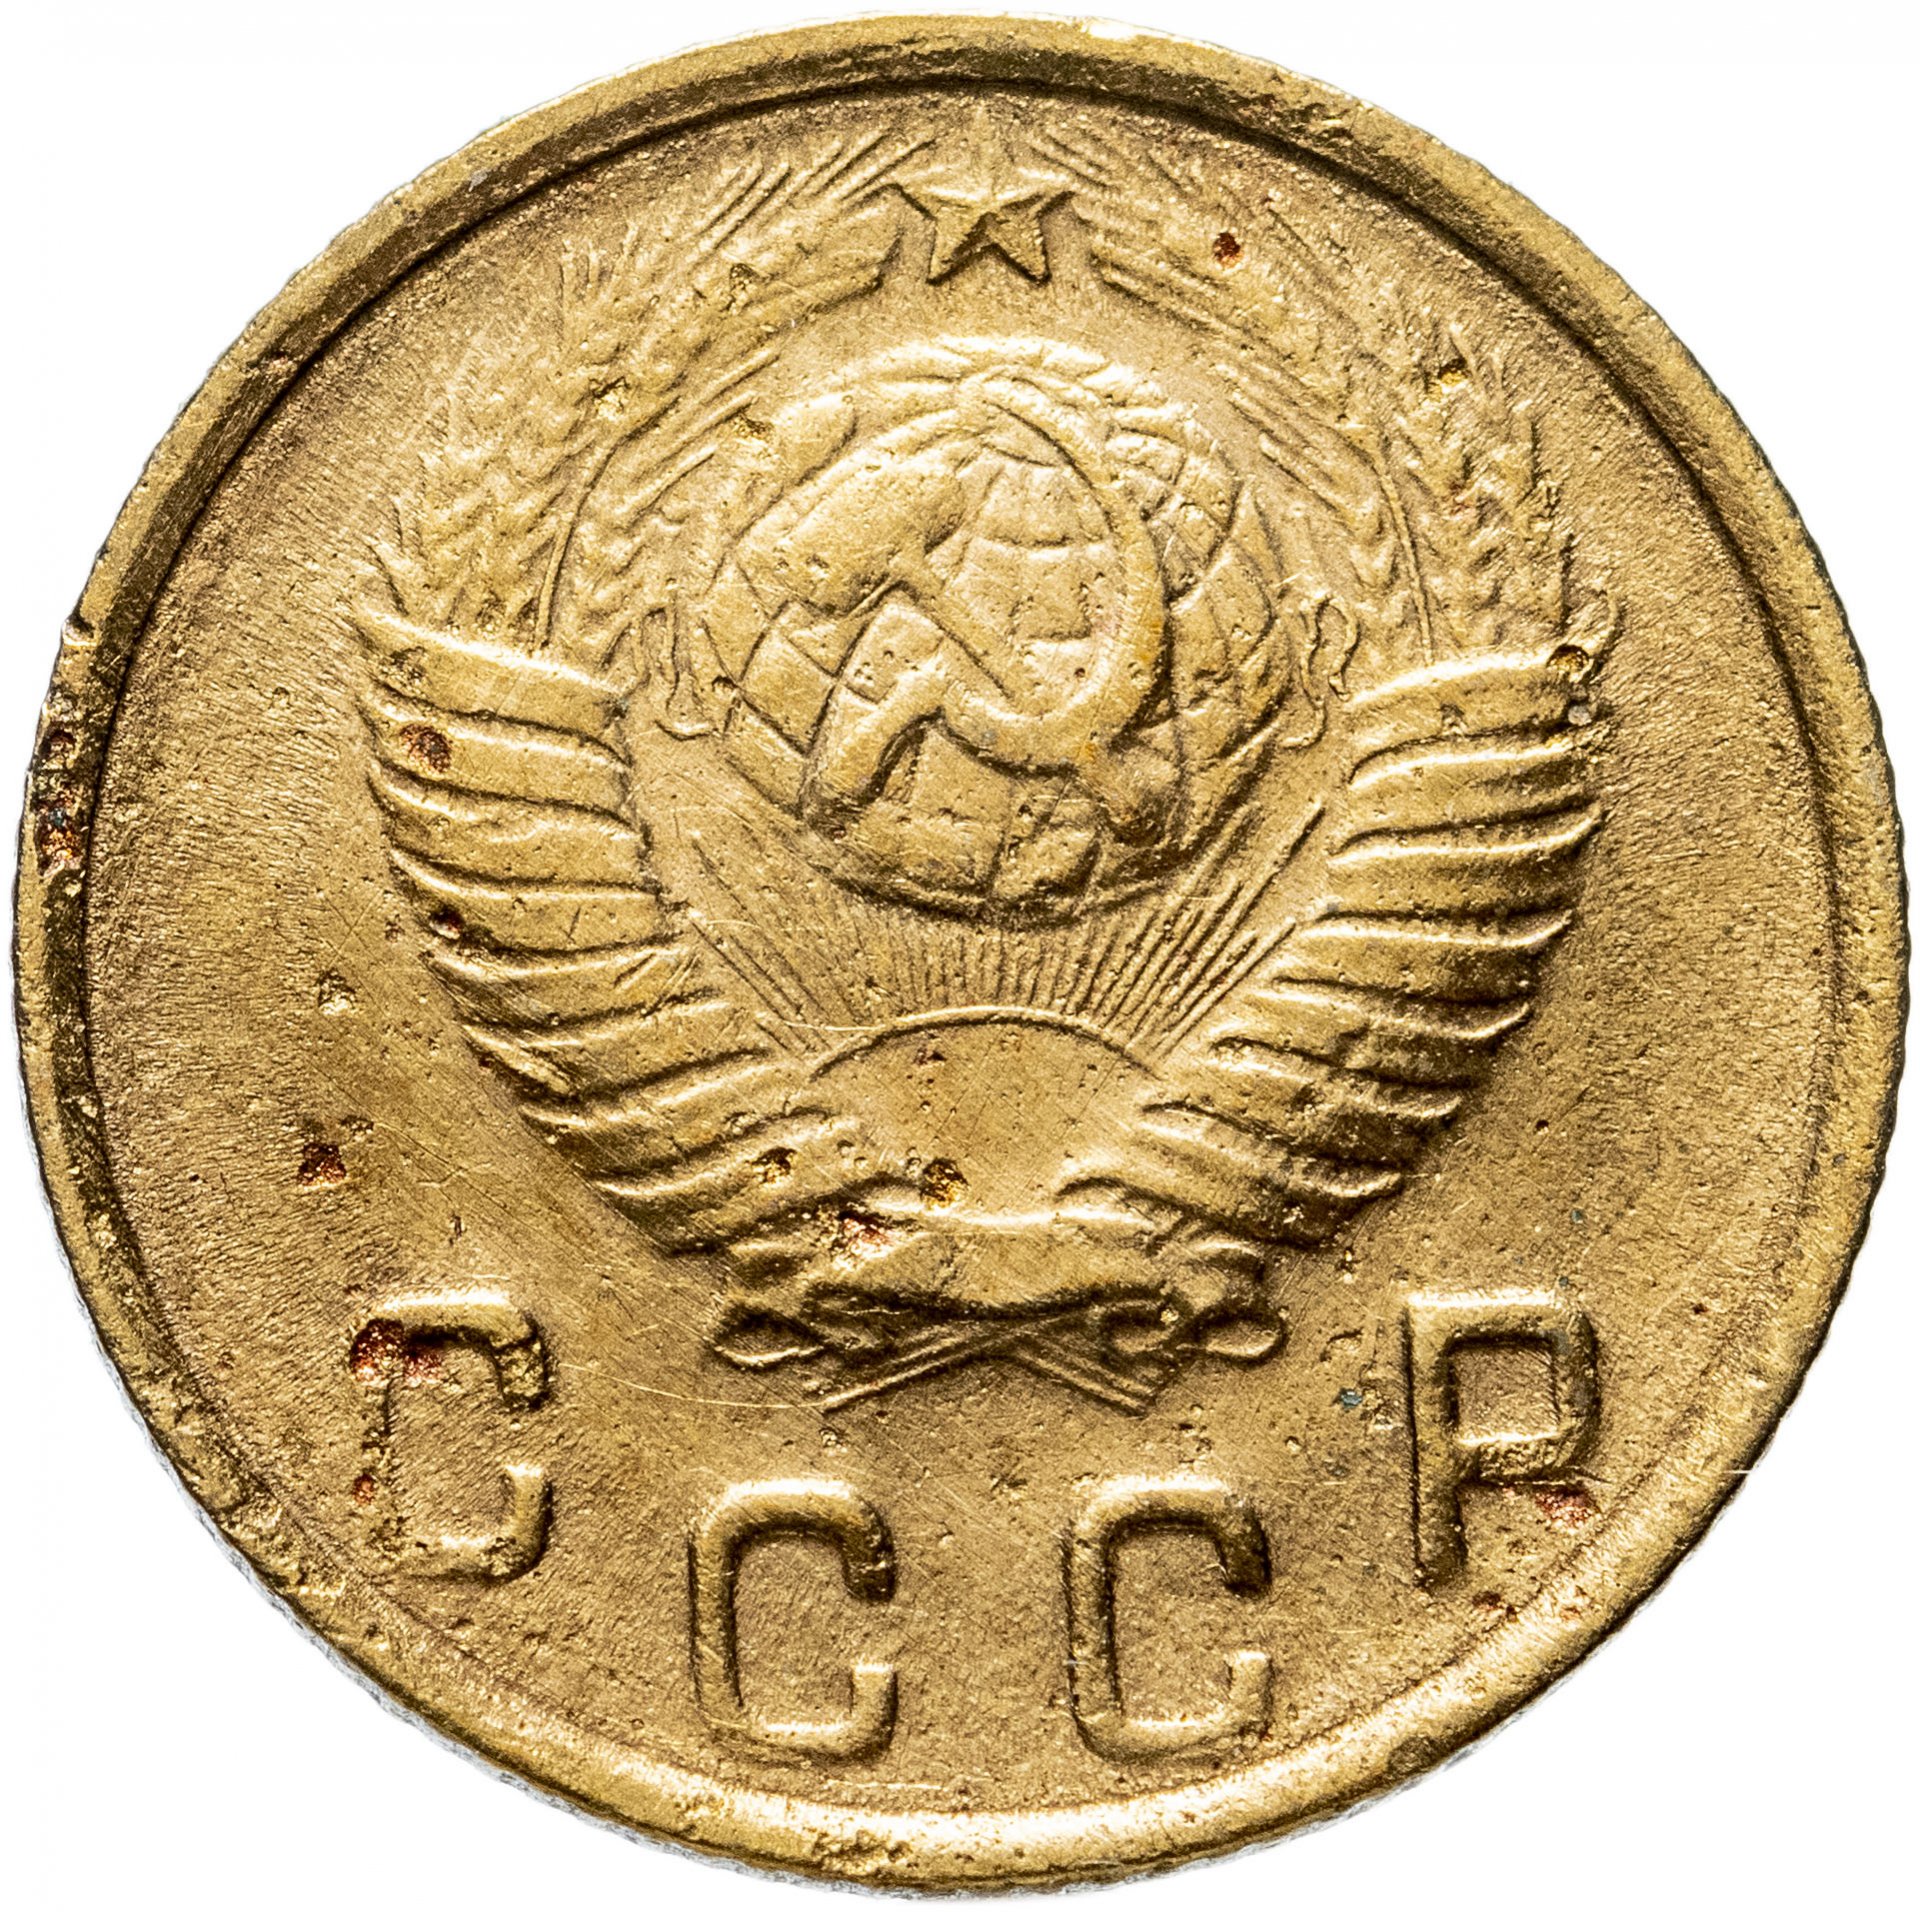 75 рублей 60. 1 Копейка 1975. Монеты 1975.